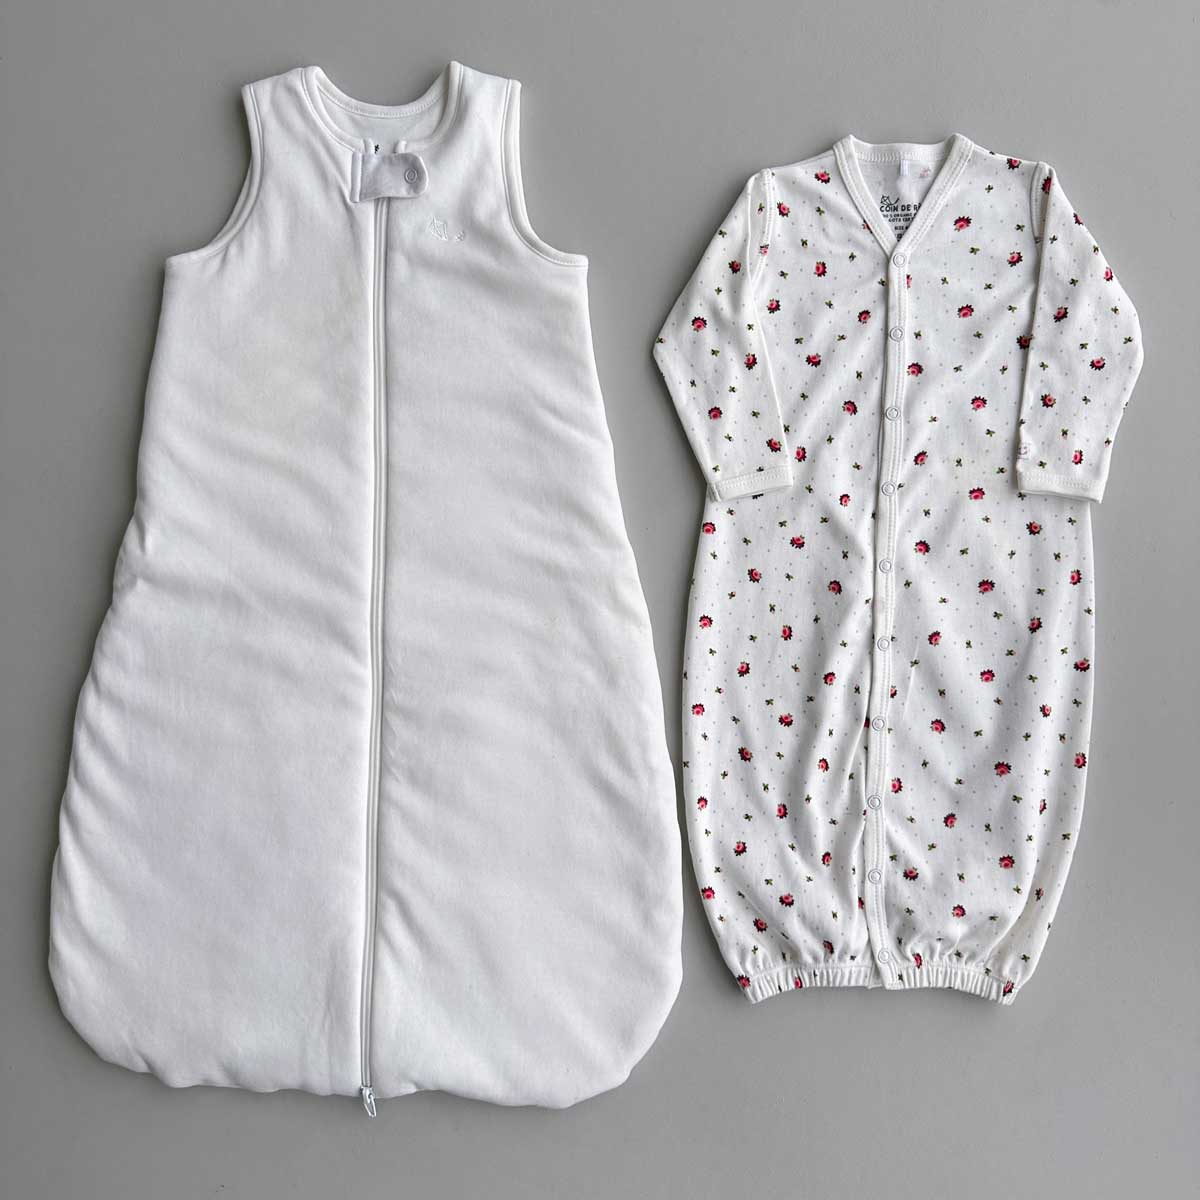 Krämvit Sovpåse (sleep sack) och blommig sovpåse (sleeping gown) bredvid varandra på plan grå yta.